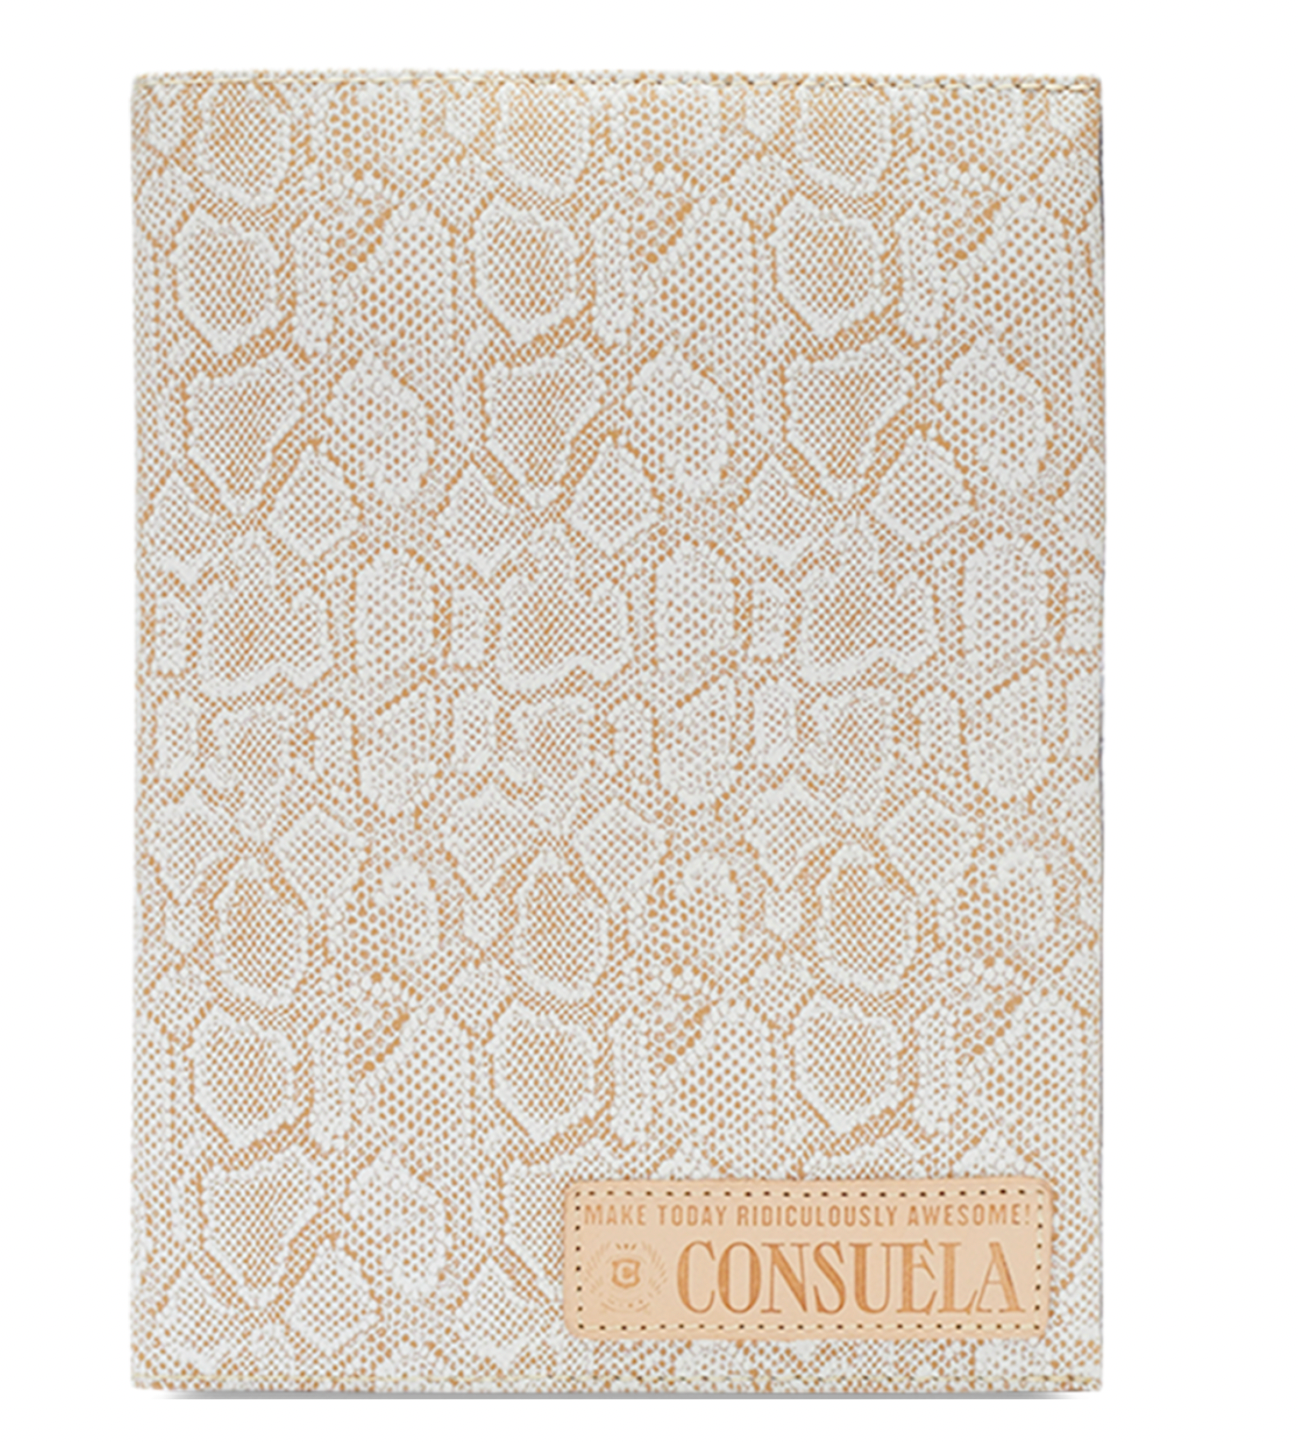 Consuela Notebook Cover - Clay